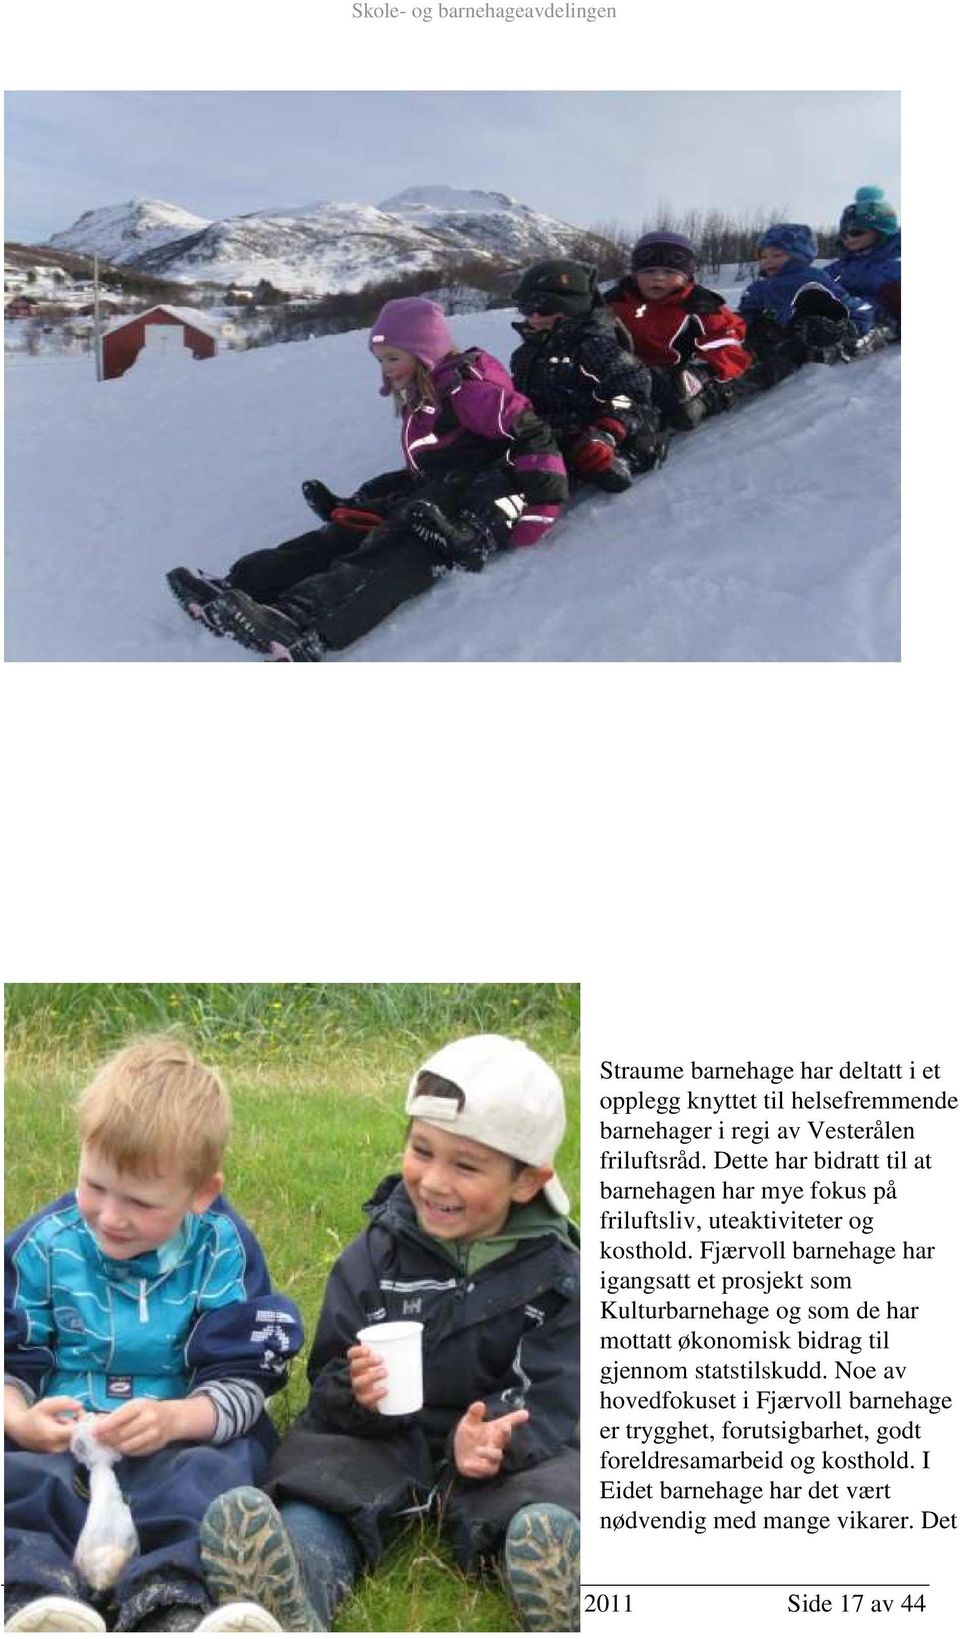 Fjærvoll barnehage har igangsatt et prosjekt som Kulturbarnehage og som de har mottatt økonomisk bidrag til gjennom statstilskudd.